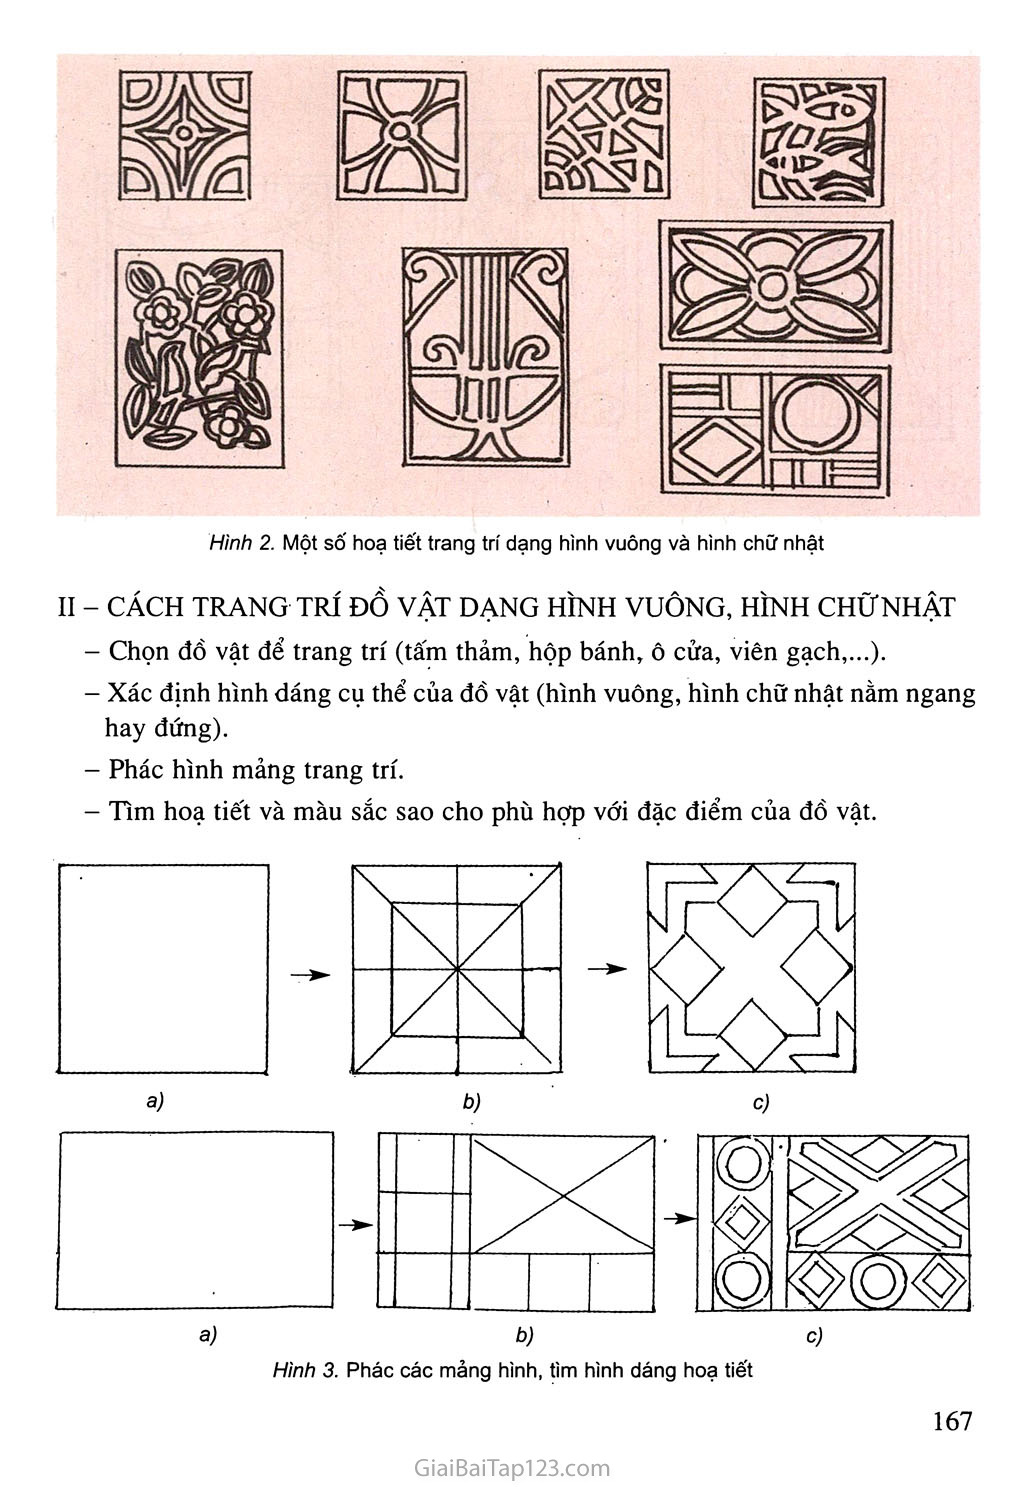 Bài 9 Vẽ trang trí  Trang trí đồ vật có dạng hình chữ nhật  Lib24Vn